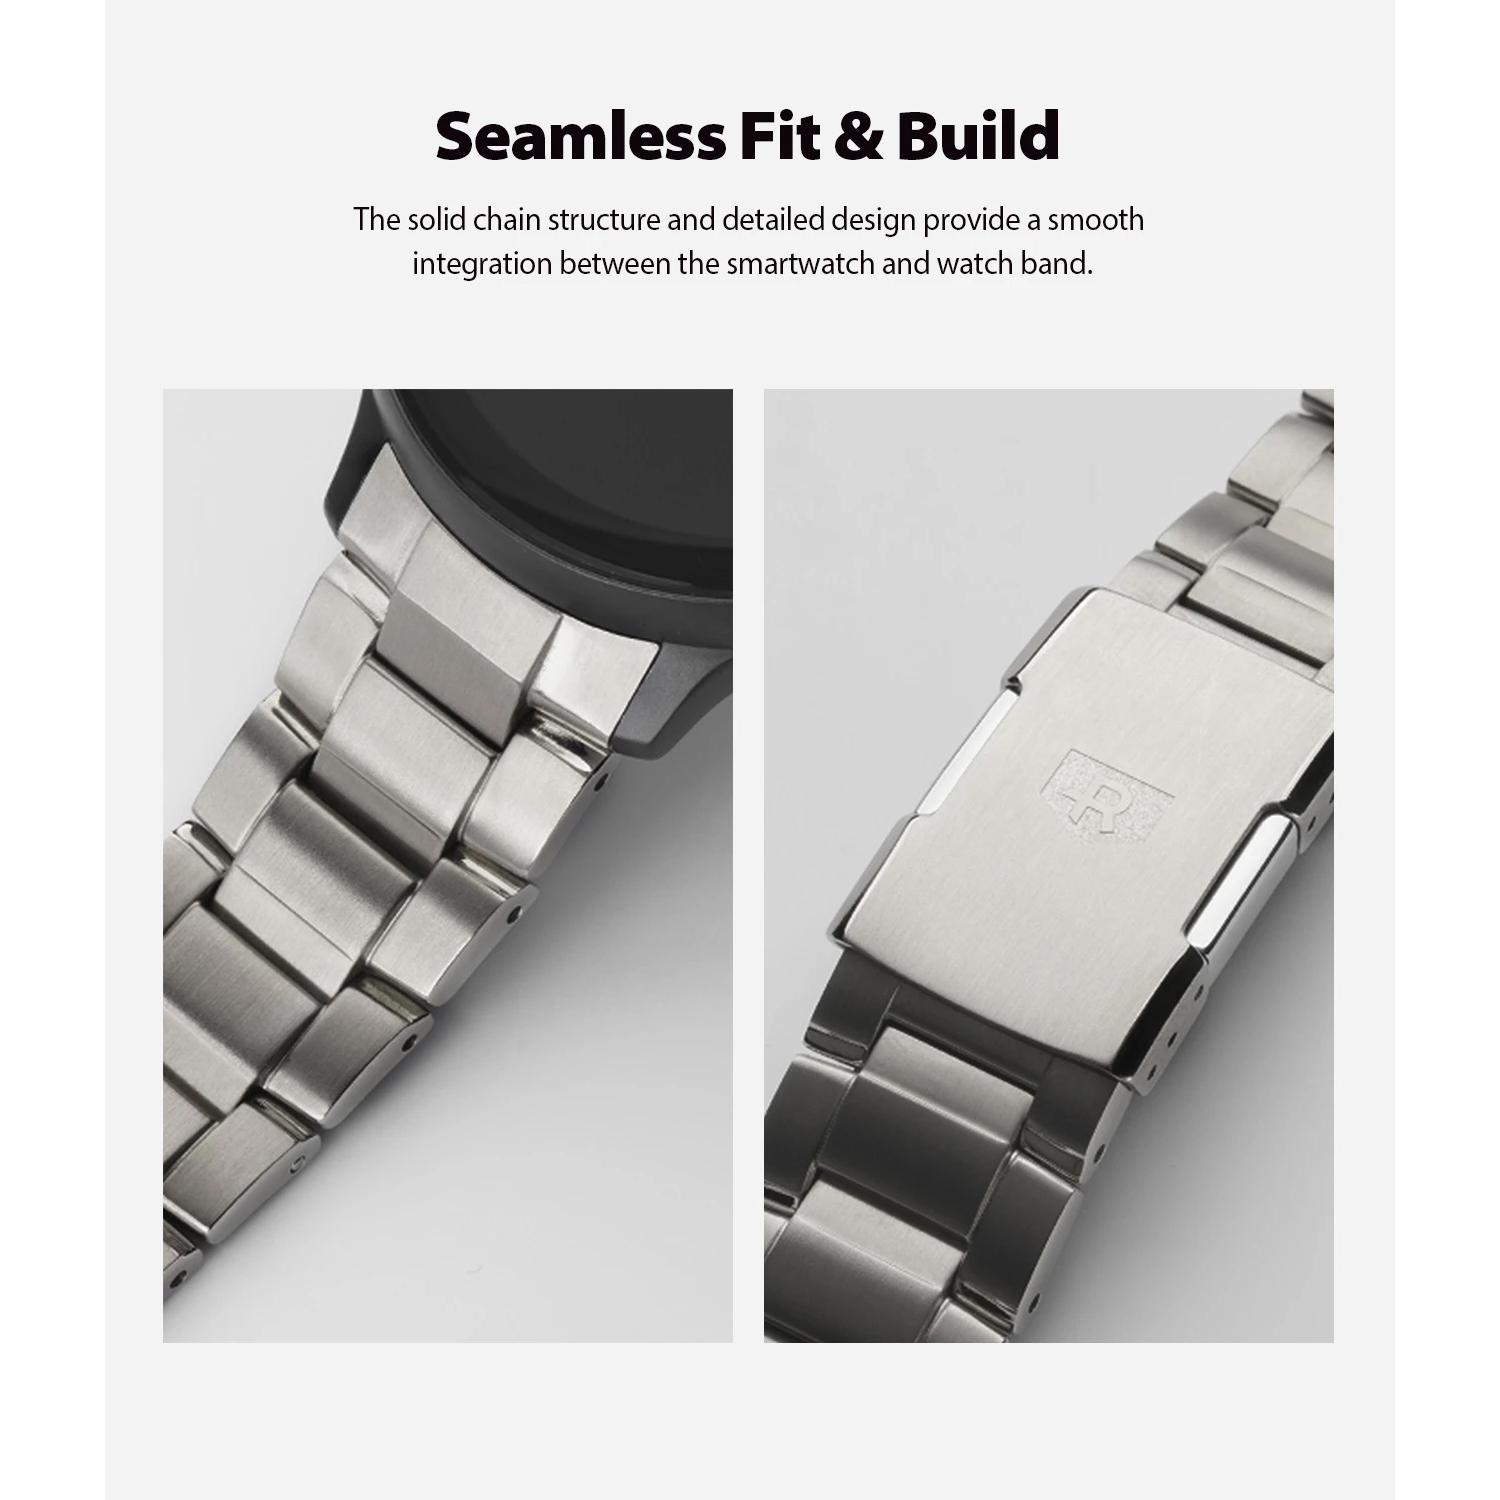 Metal One Titanium Bracelet Samsung Galaxy Watch Active 2 44mm Argent